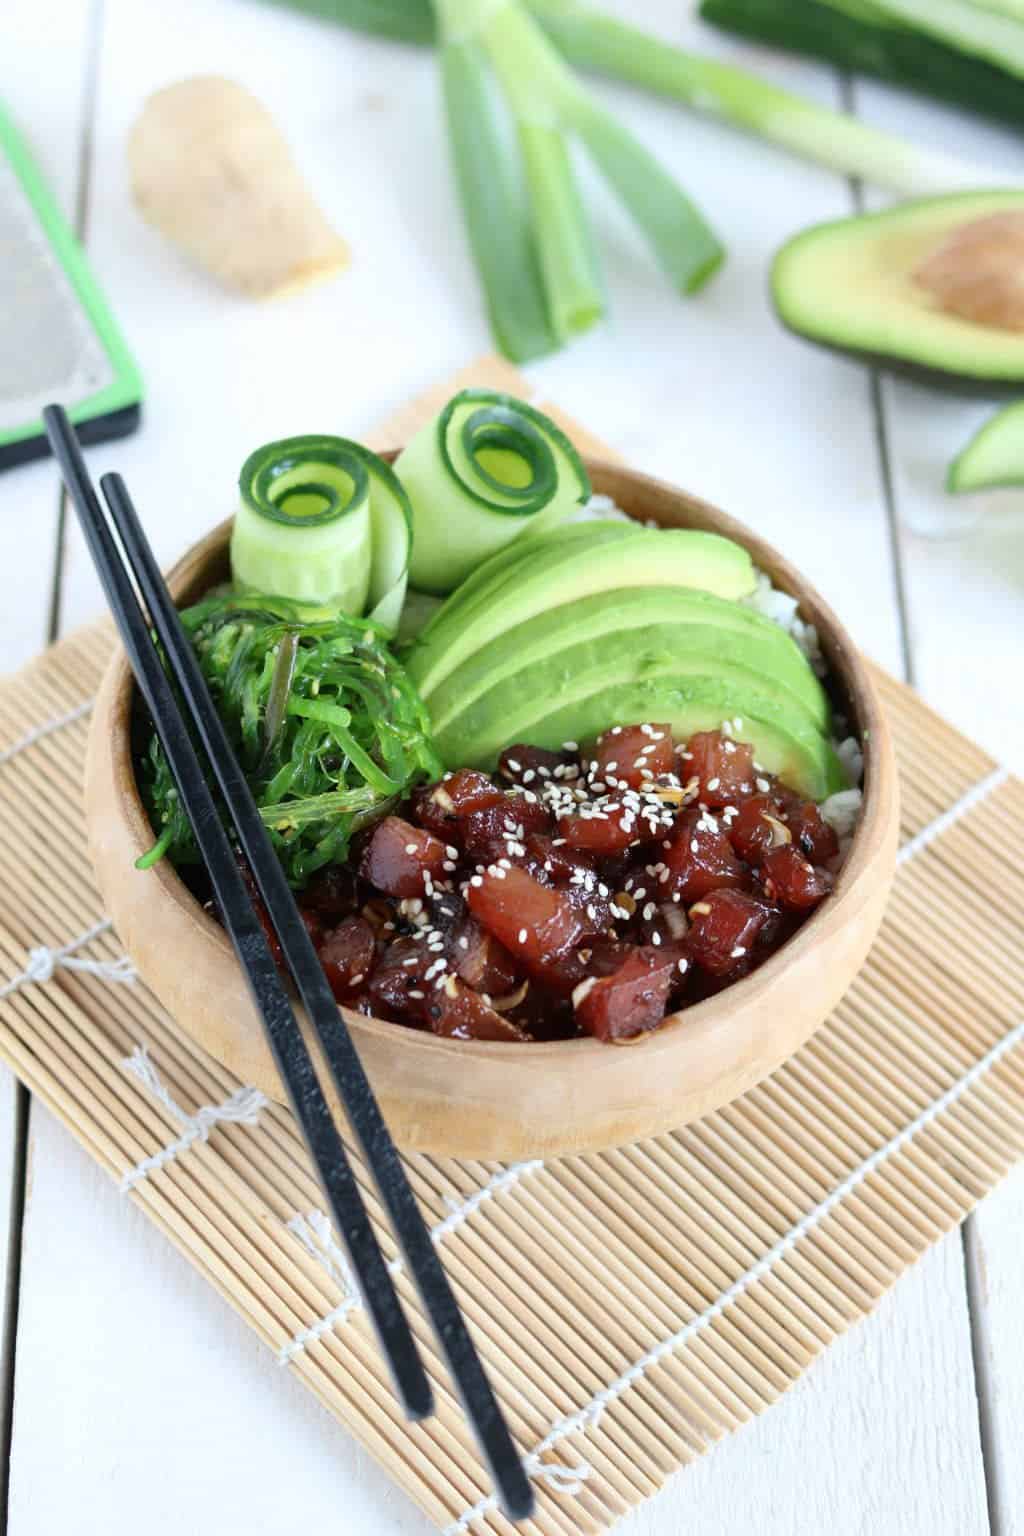 De ideale makkelijke maaltijd op de vrijdag: een poké bowl met tonijn, avocado en zeewier. De marinade is goddelijk en dat wil je echt geprobeerd hebben. #vis #tonijn 